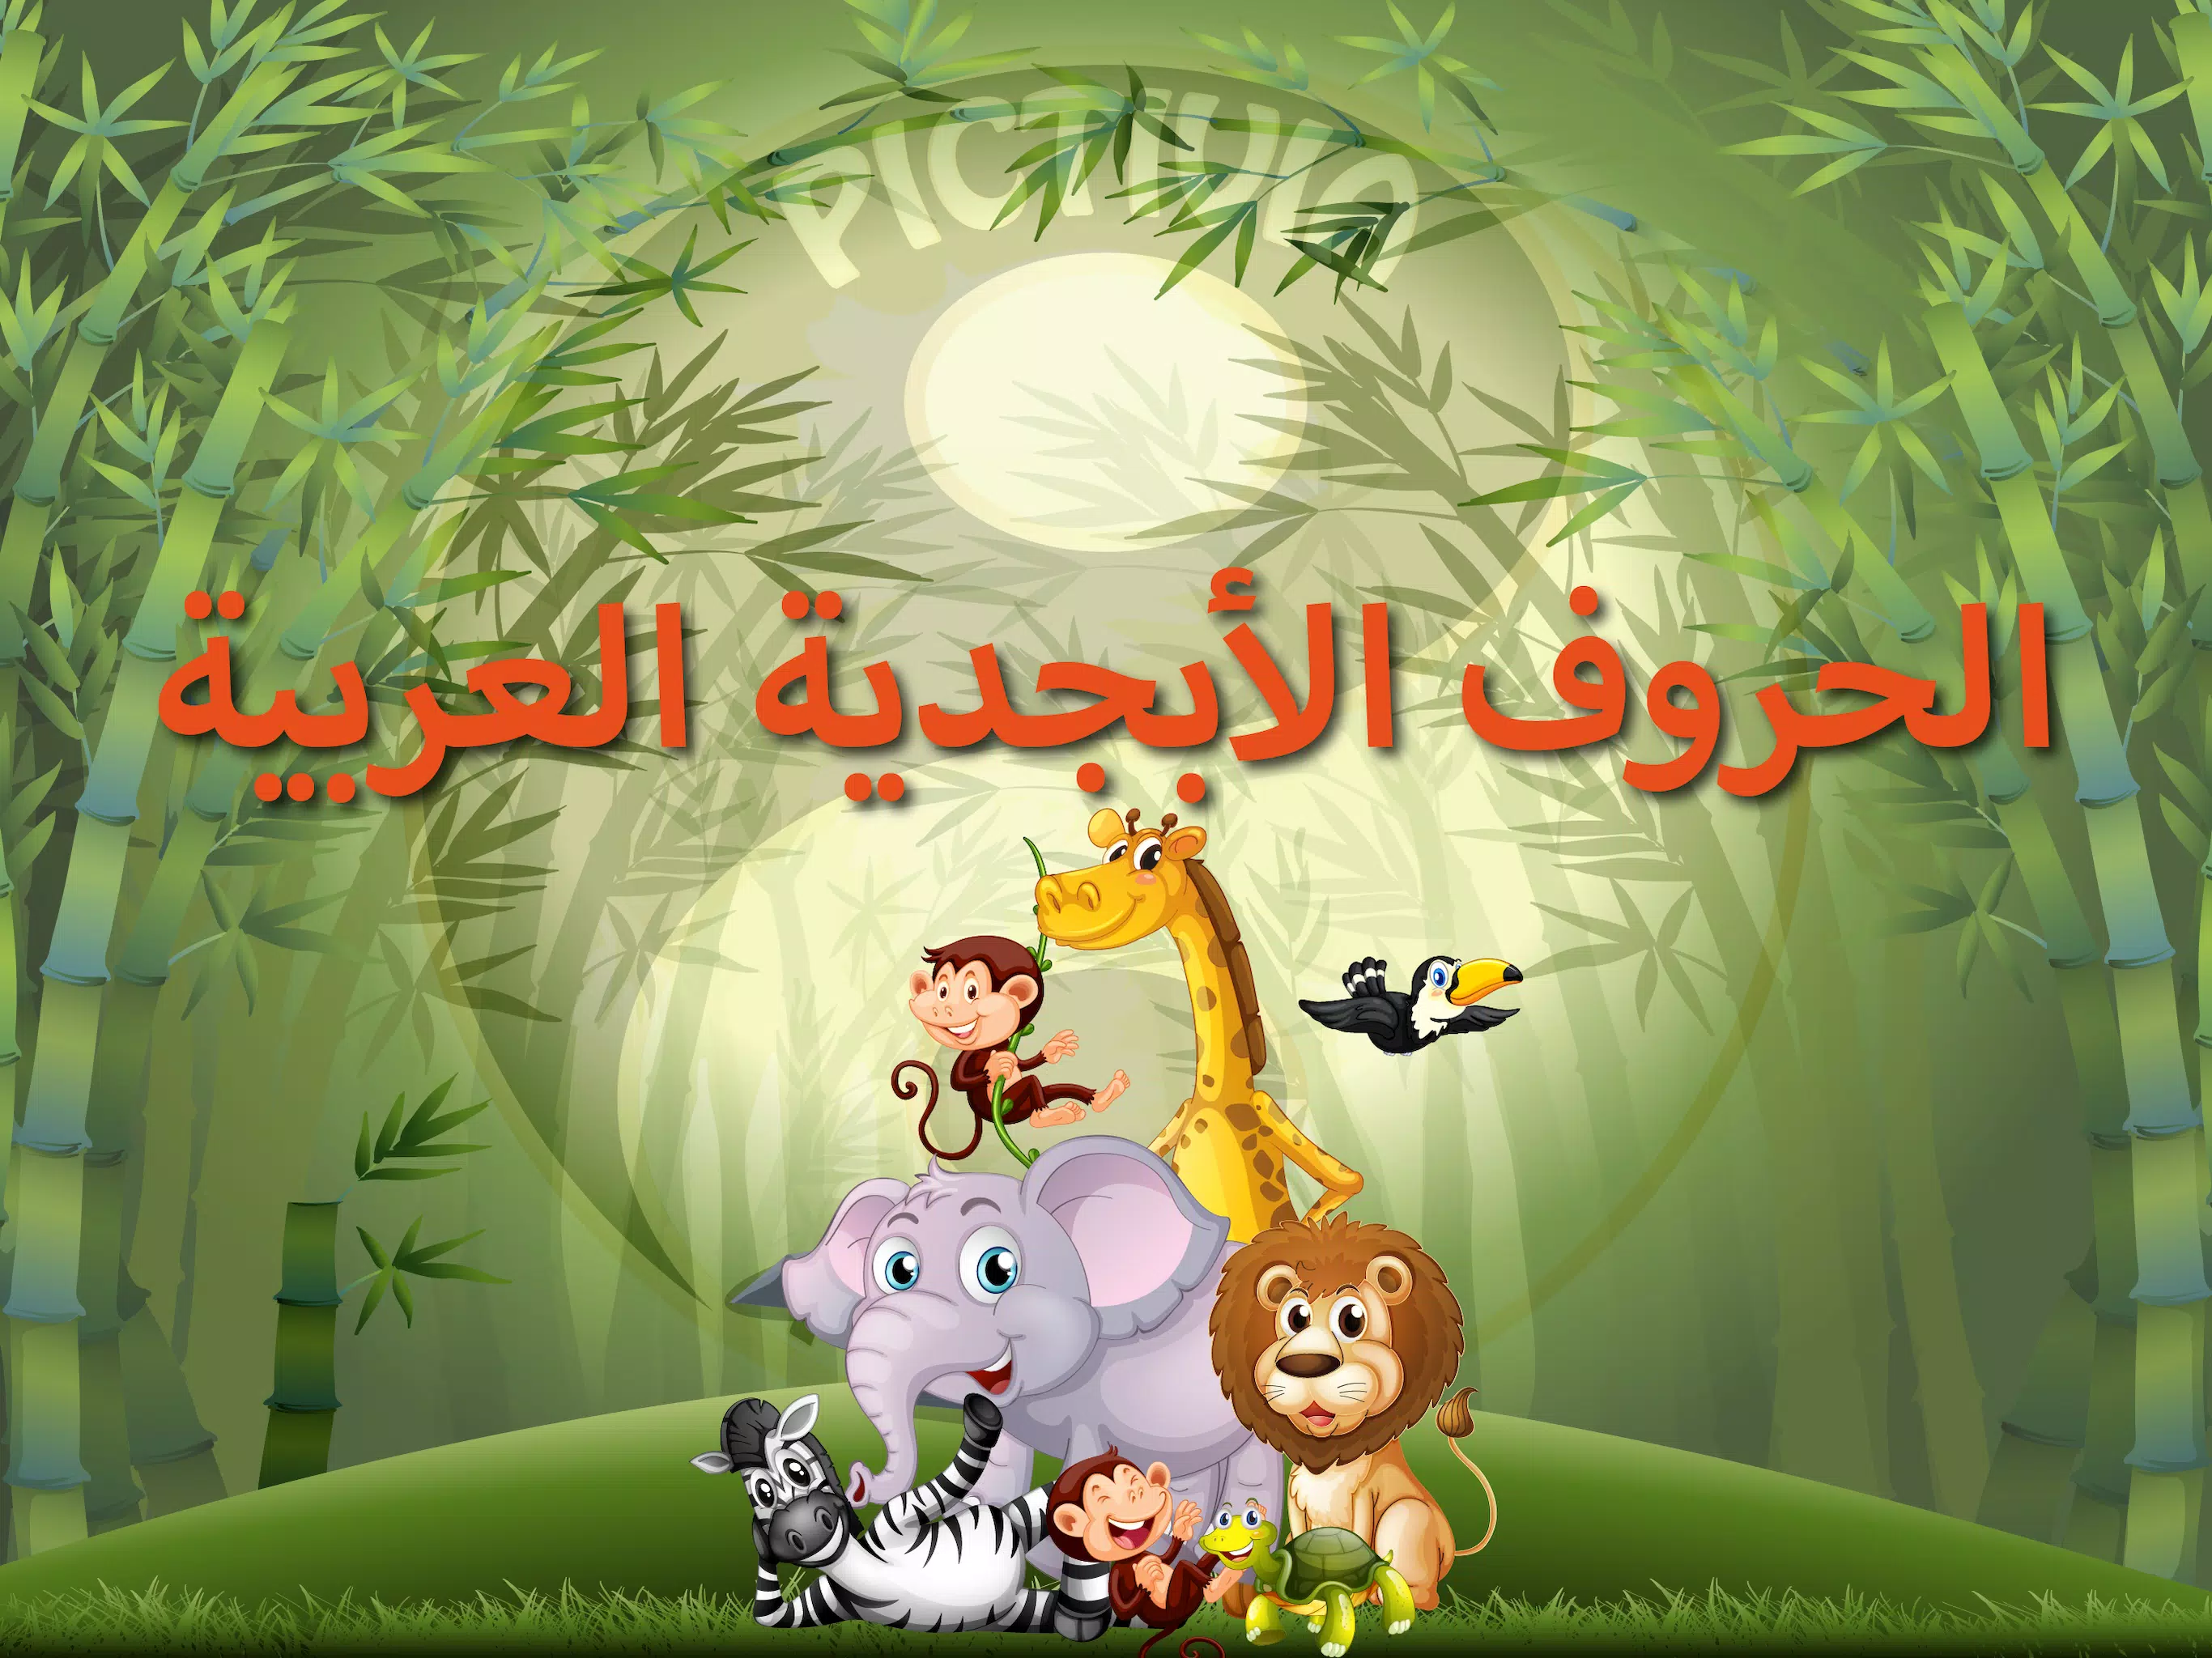 الأبجدية (Arabic Alphabet) APK for Android Download